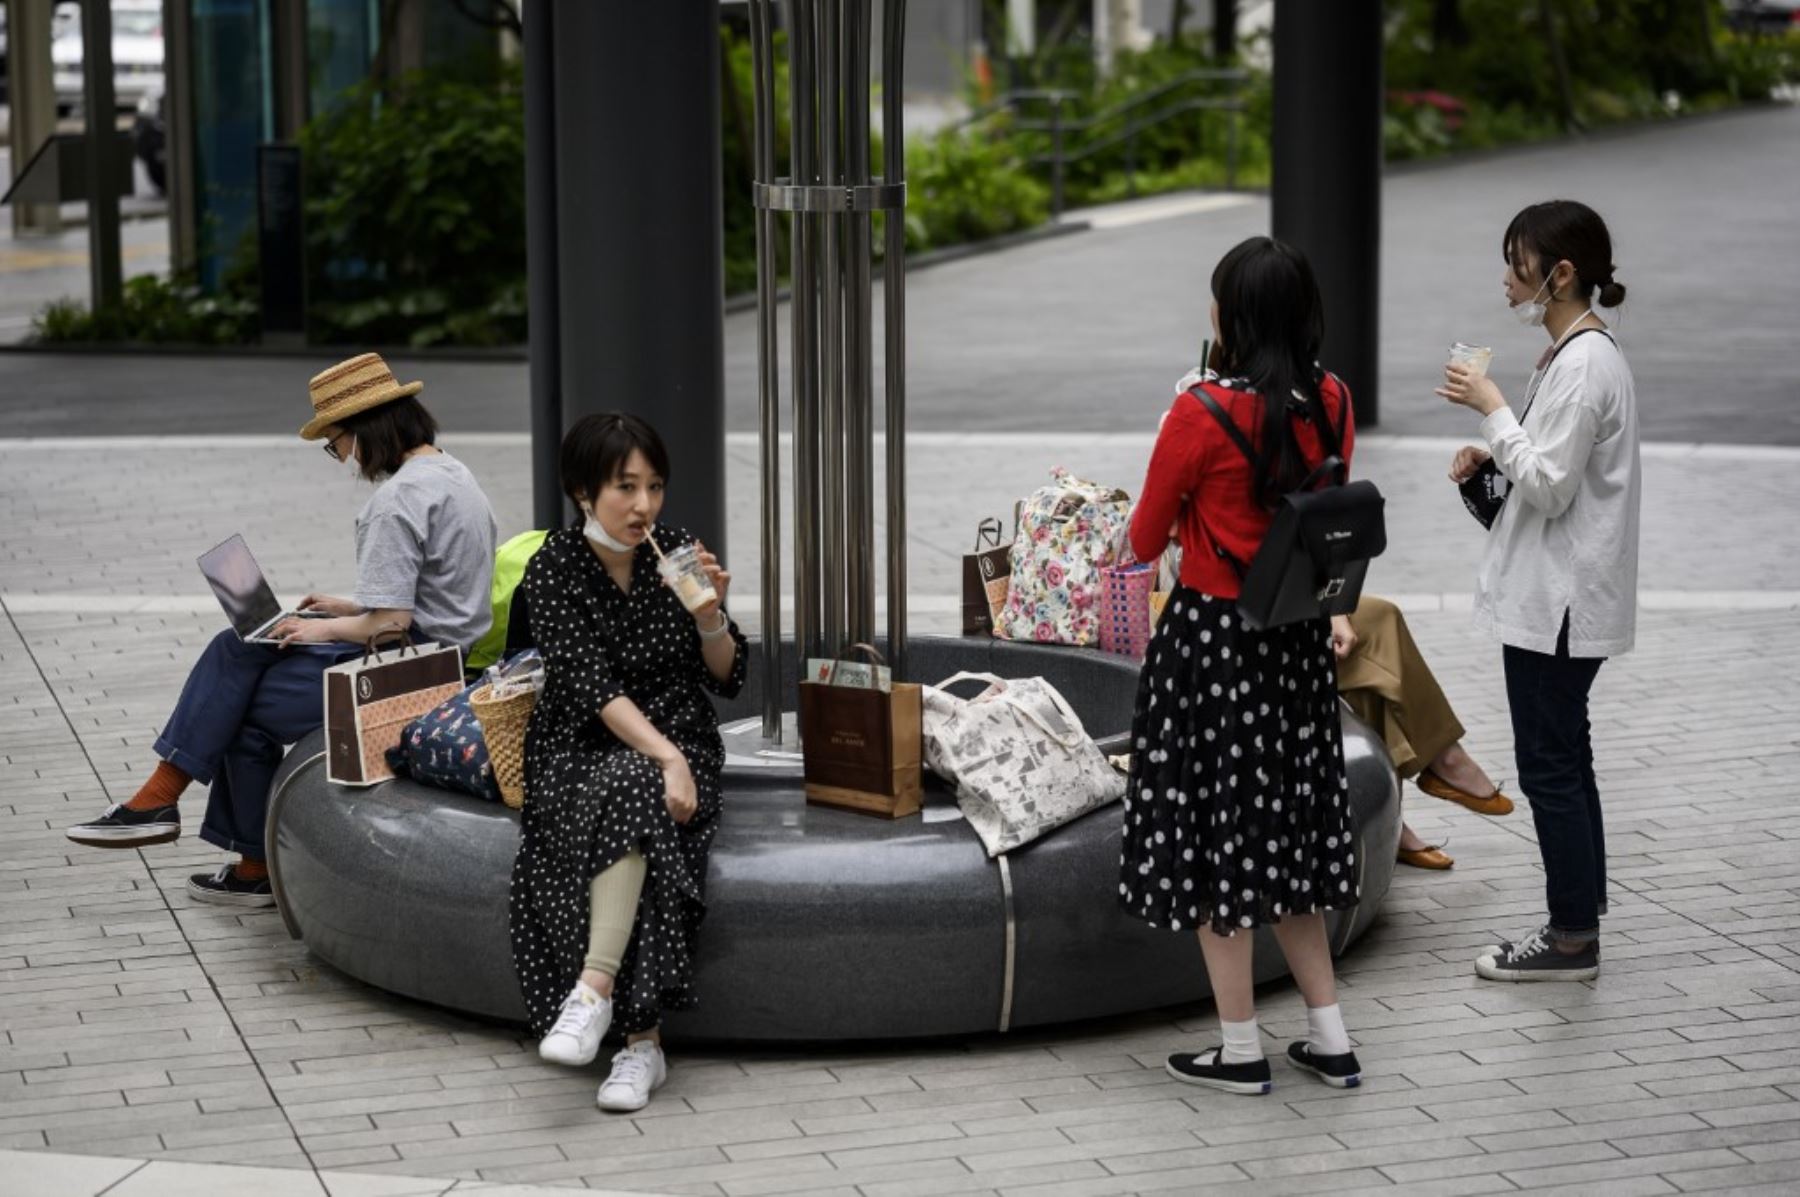 Las personas con máscaras faciales en medio de la preocupación por la propagación del coronavirus COVID-19 se reúne frente a la estación de tren de Futako-Tamagawa en Tokio. Foto: AFP